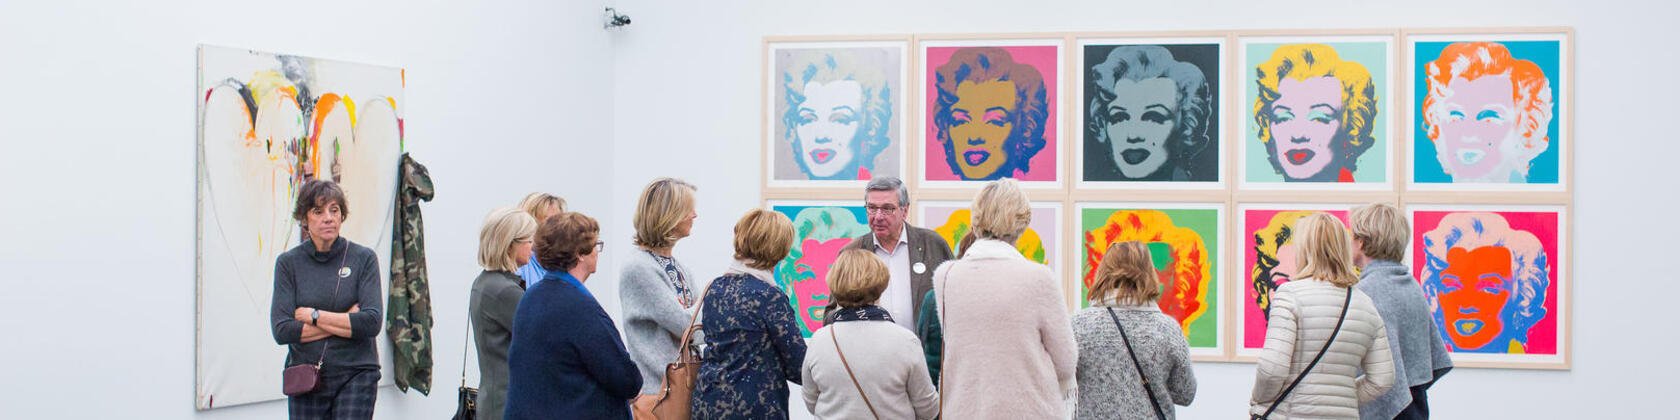 bezoekers kijken naar een aantal portretten van Marilyn Monroe door Andy Warhol